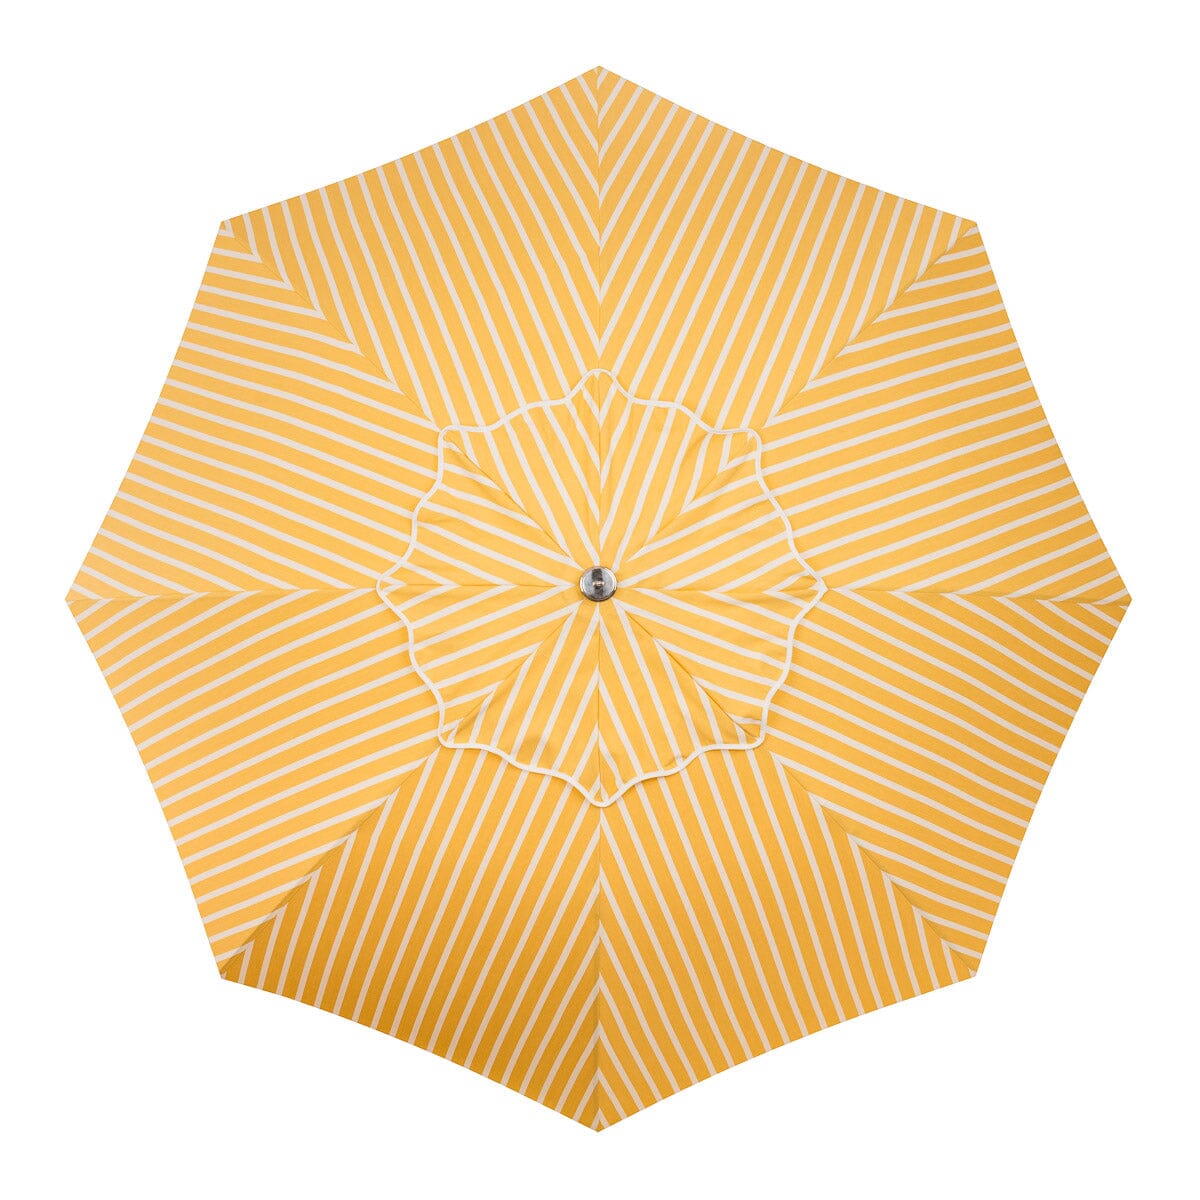 The Patio Umbrella - Monaco Mimosa Stripe Patio Umbrella Business & Pleasure Co 